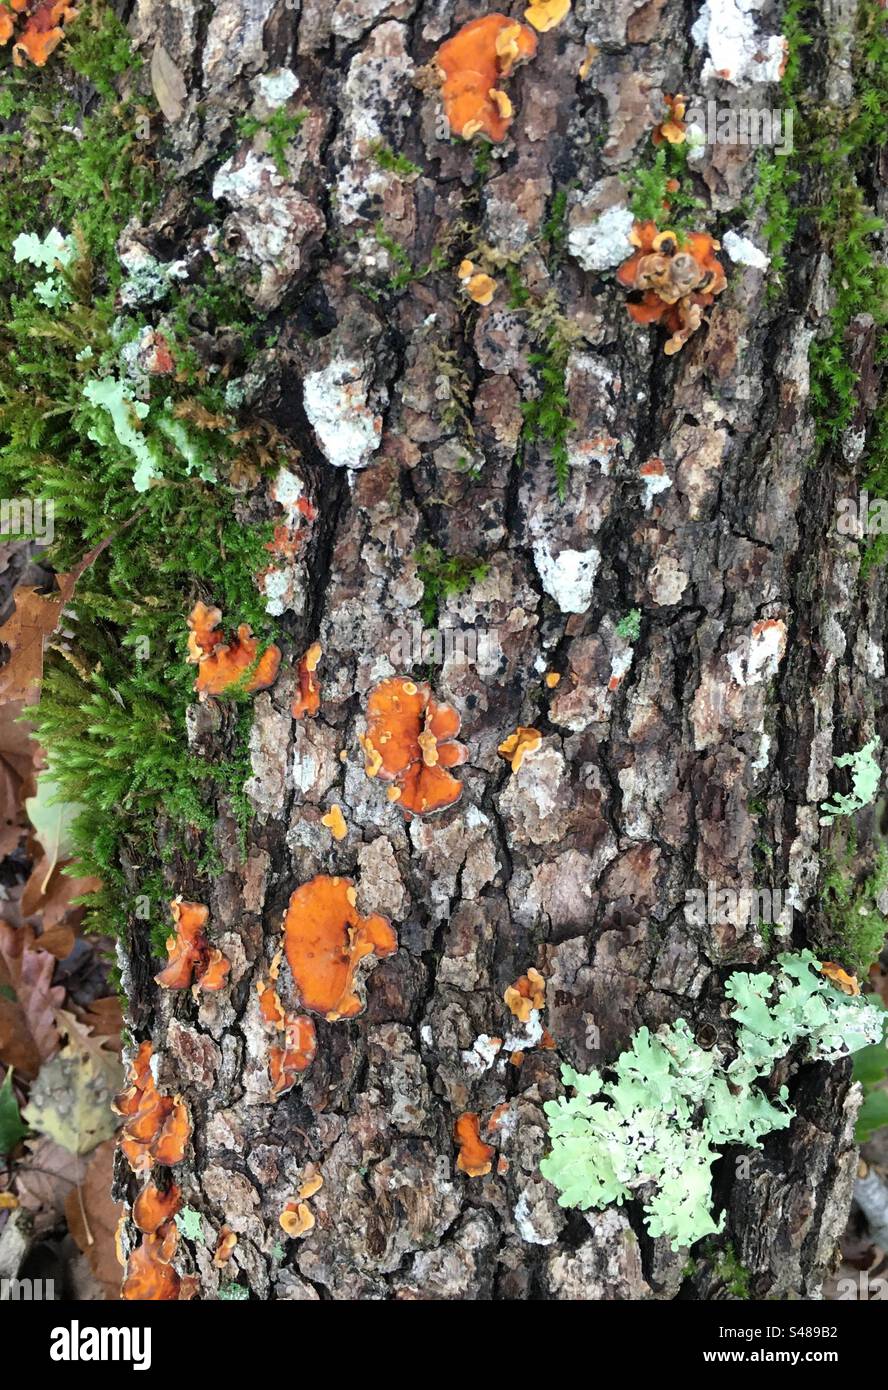 Tronco di albero caduto nel bosco ricoperto da muschi, licheni e funghi Stock Photo